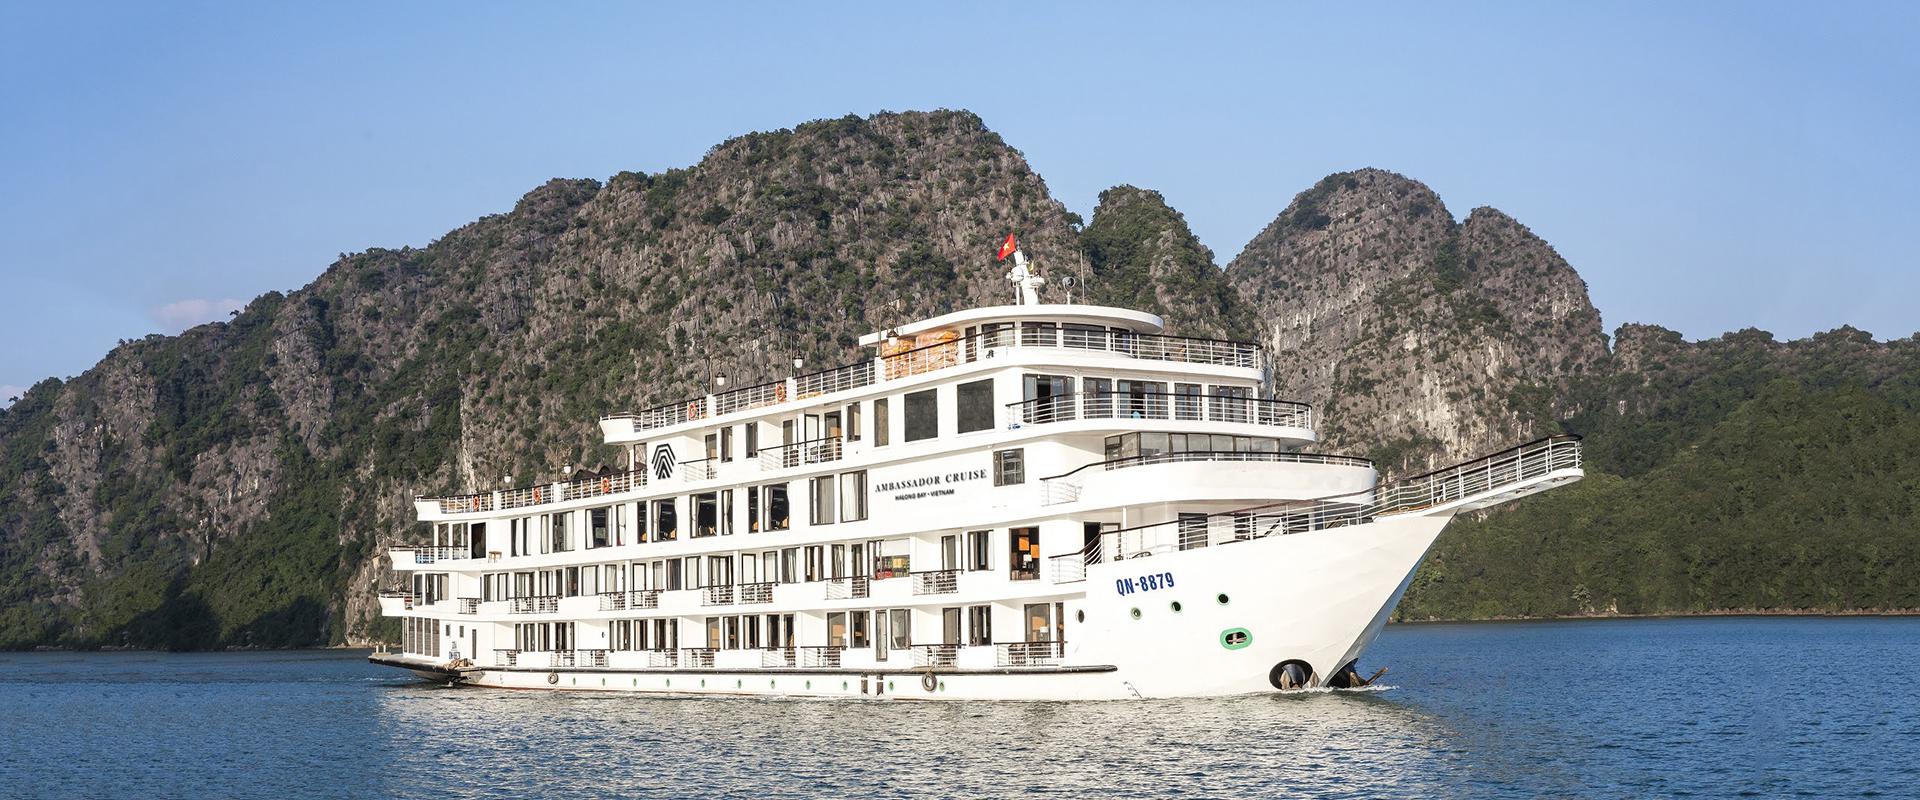 Review tour du thuyền Hạ Long giá rẻ tốt nhất năm 2021